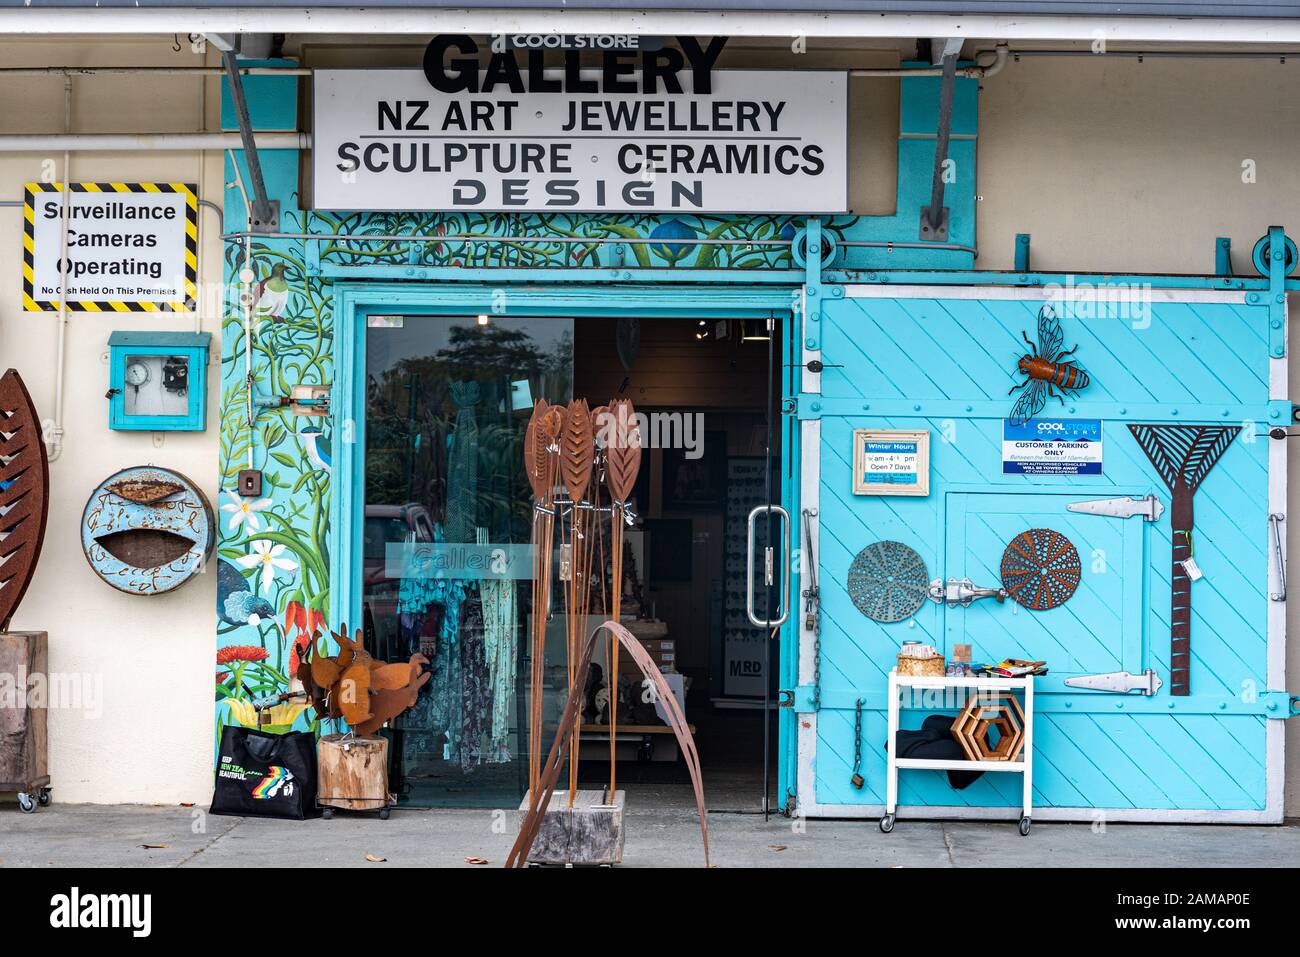 Galerie d'objets d'art dans un ancien magasin de coldstore, Mapua, Nouvelle-Zélande Banque D'Images